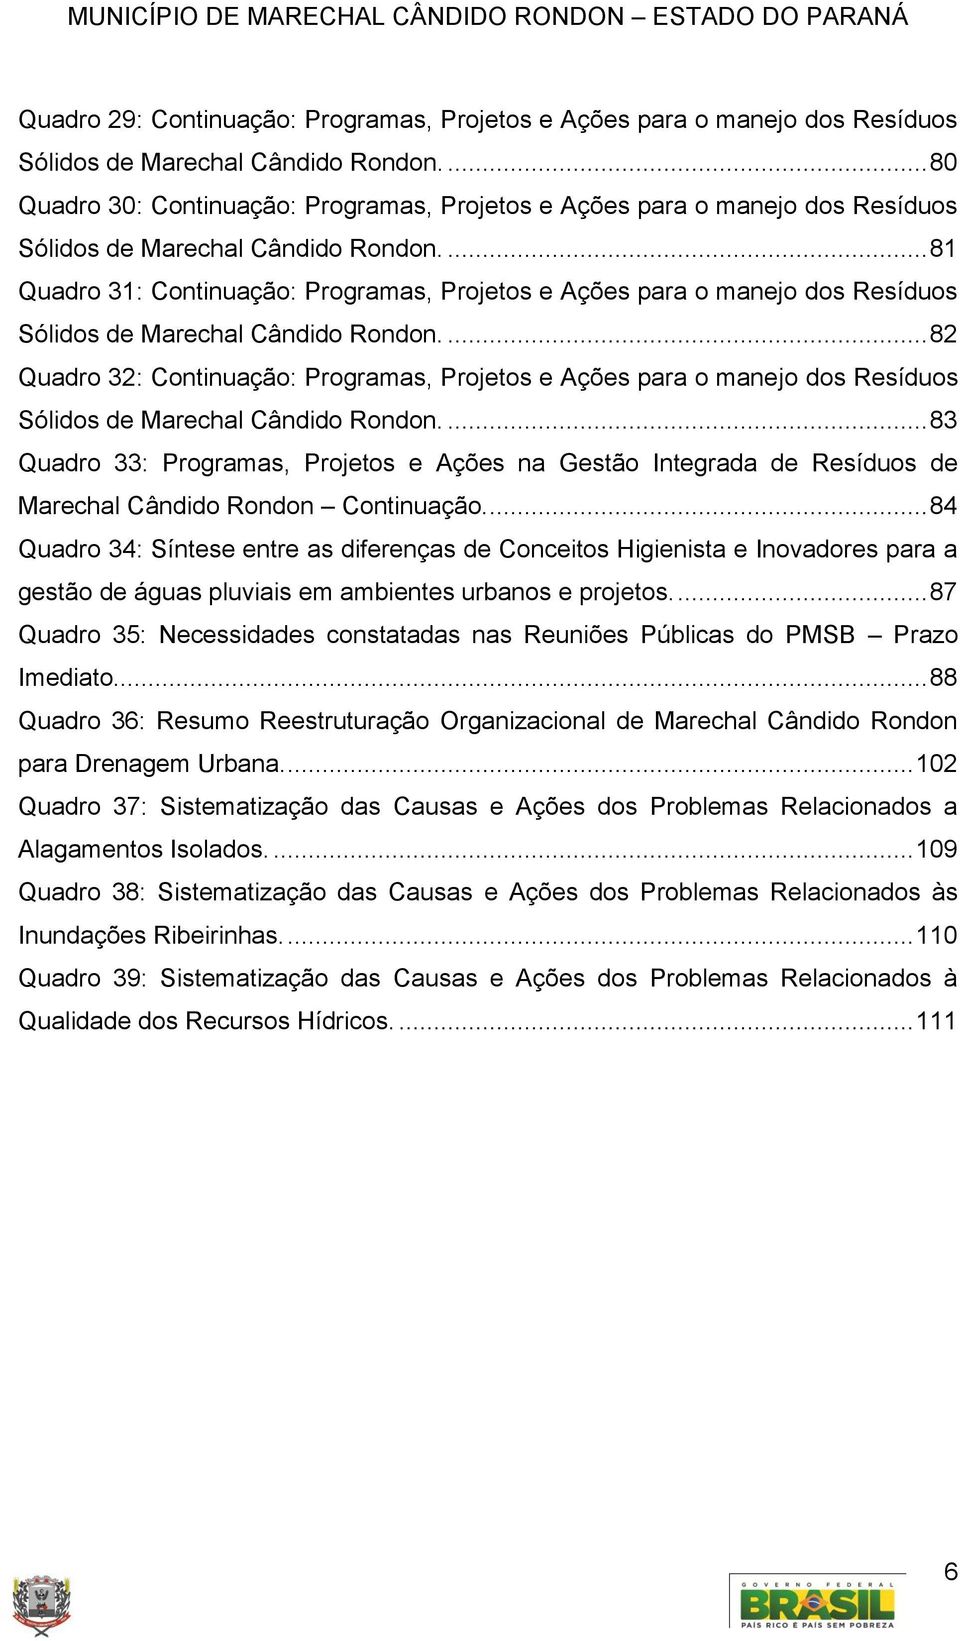 ... 81 Quadro 31: Continuação: Programas, Projetos e Ações para o manejo dos Resíduos Sólidos de Marechal Cândido Rondon.